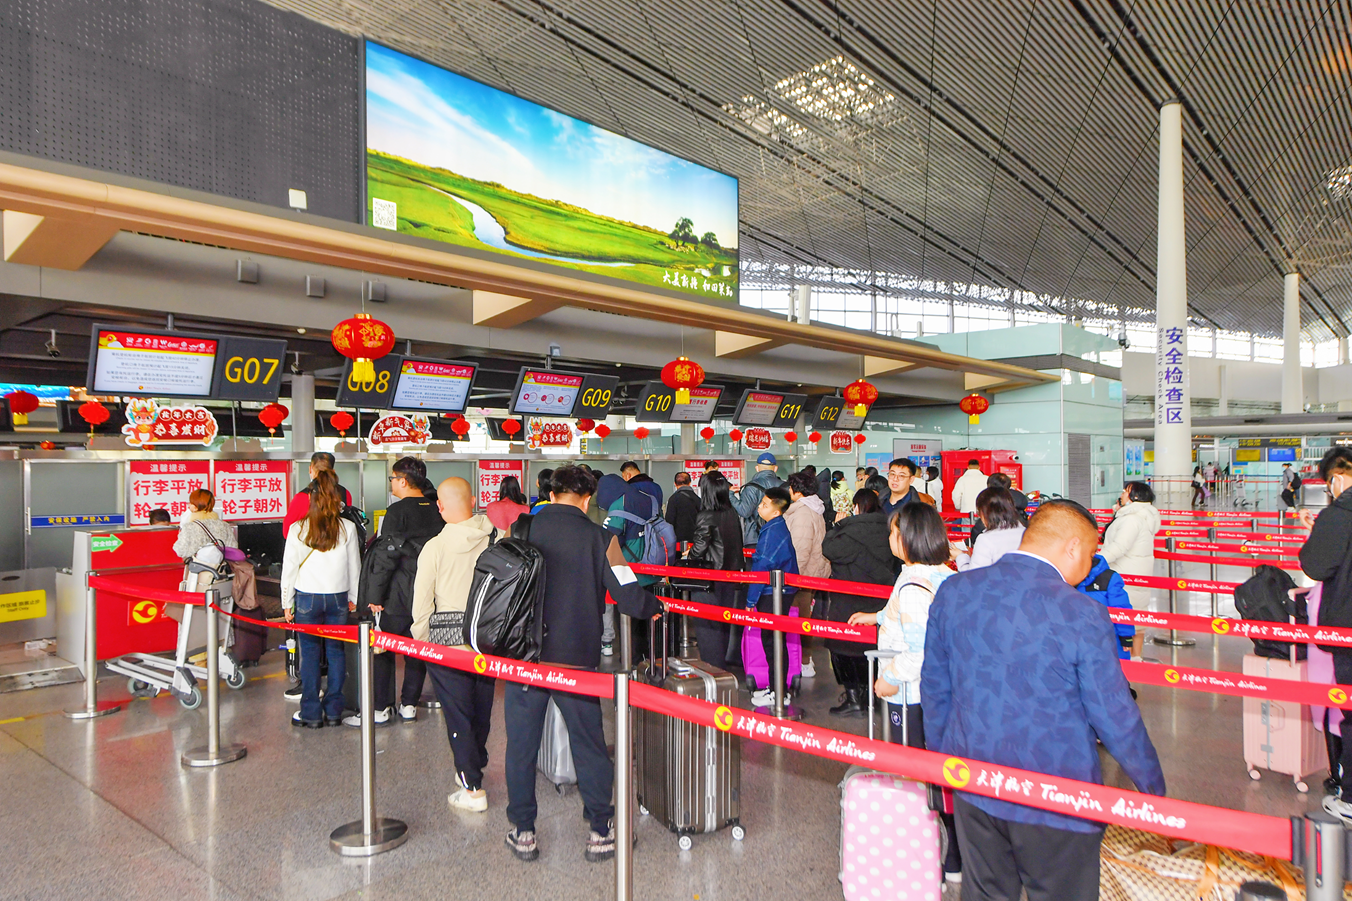 天津航空今年春运日航班量同比增长36%  多措并举保障安全有序平稳运行